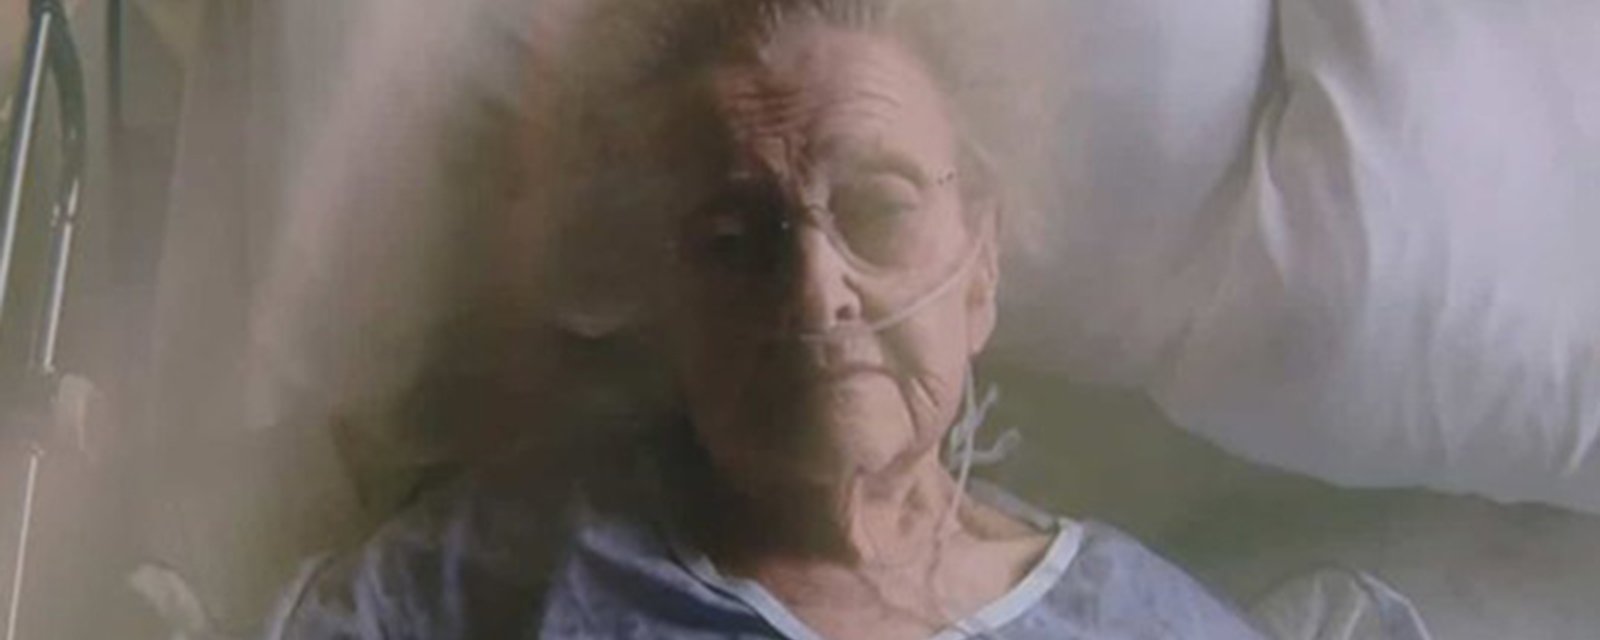 Une agence RE/MAX poursuit une femme de 87 ans pour la deuxième fois